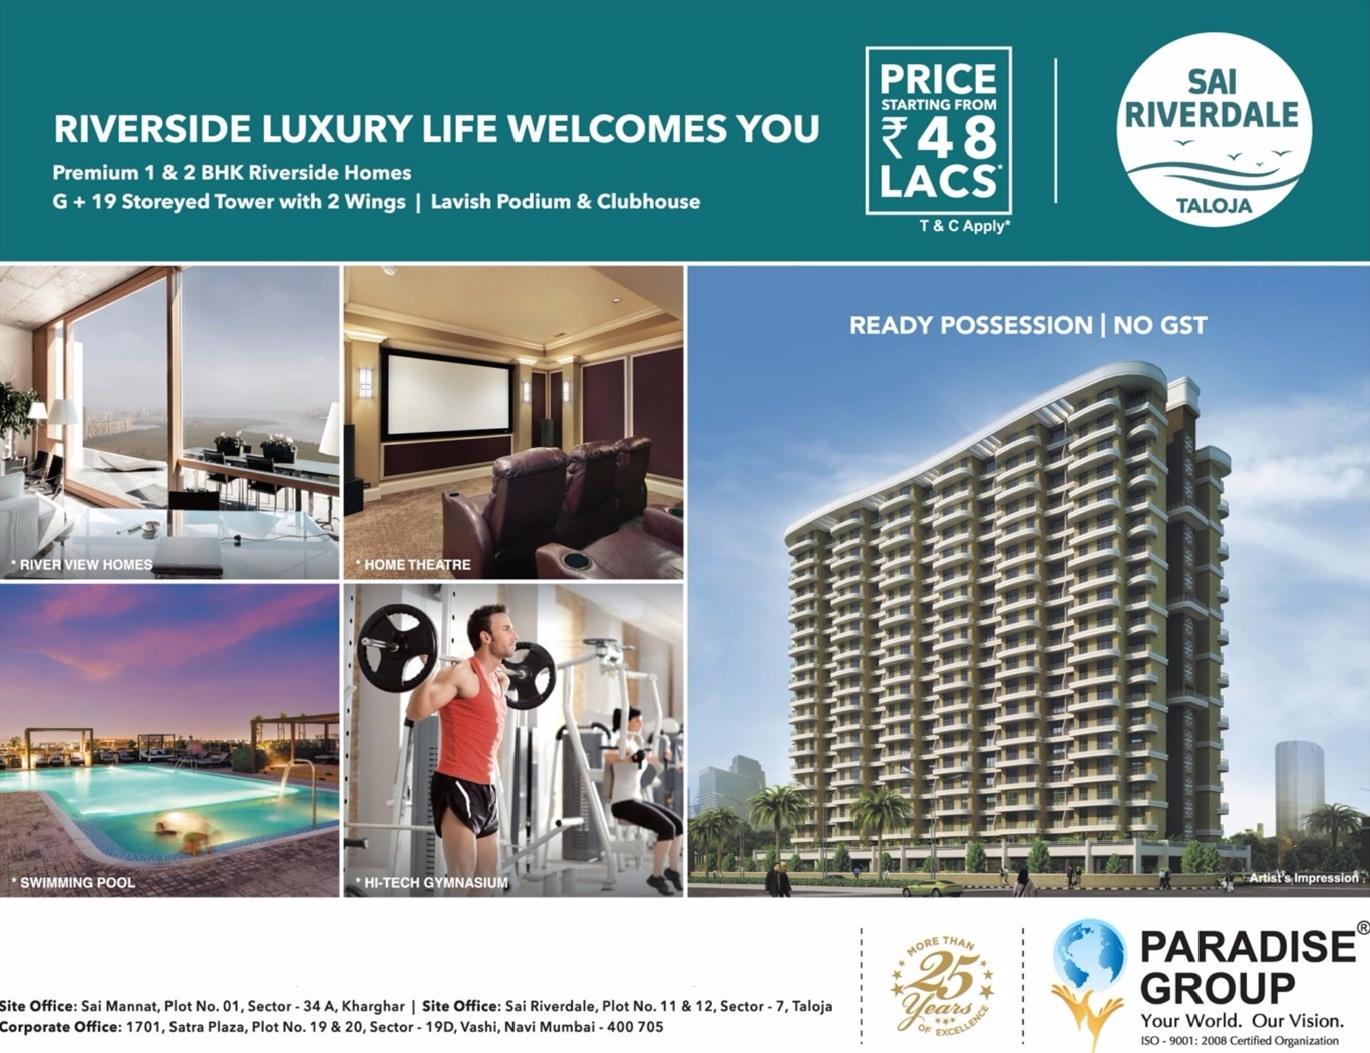 Riverside luxury life welcomes you at Paradise Sai Riverdale in Navi Mumbai